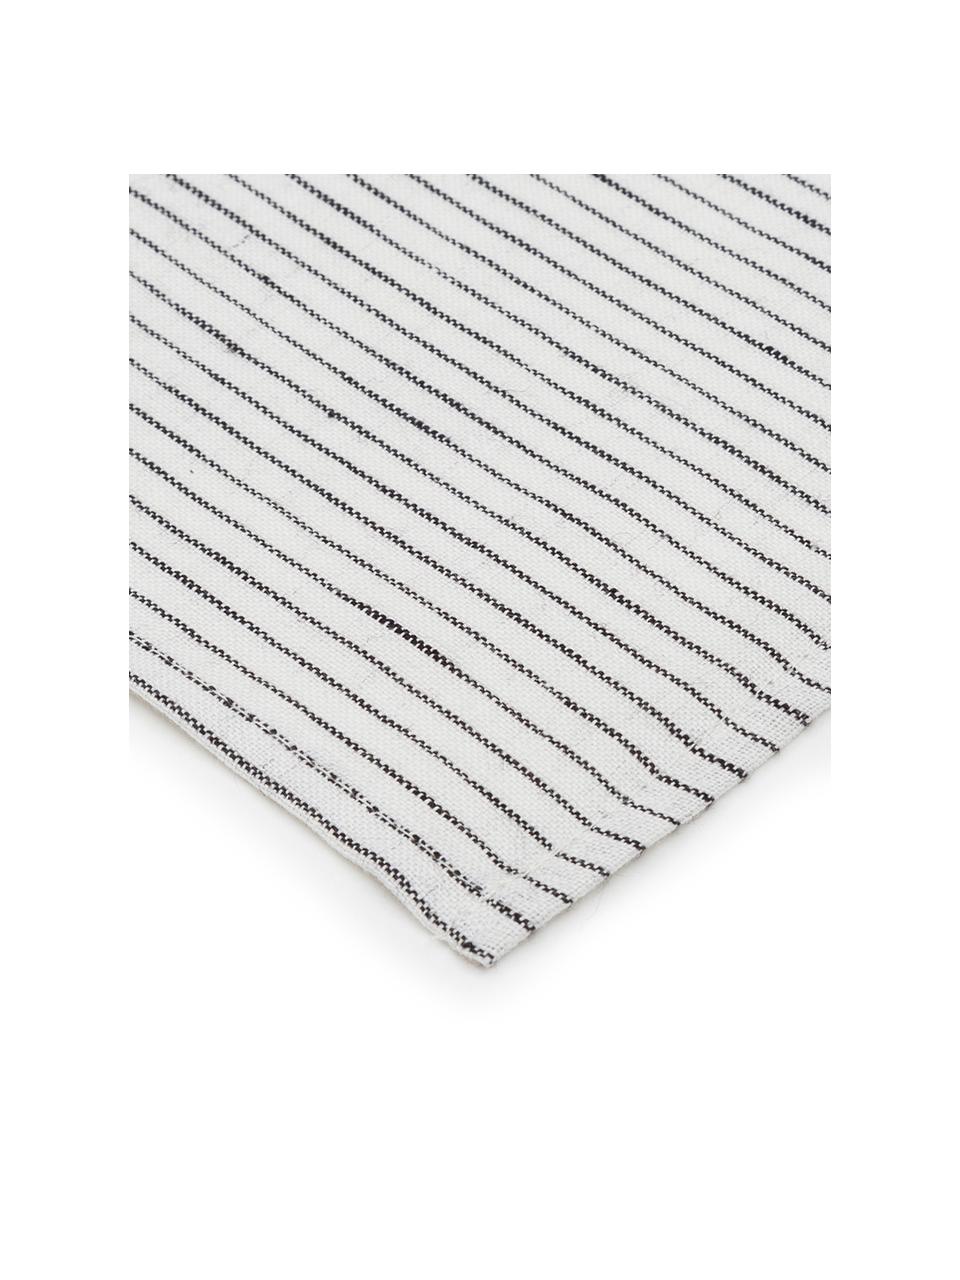 Serviettes de table pur lin Svete, 6 pièces, Blanc crème, noir, larg. 43 x long. 43 cm